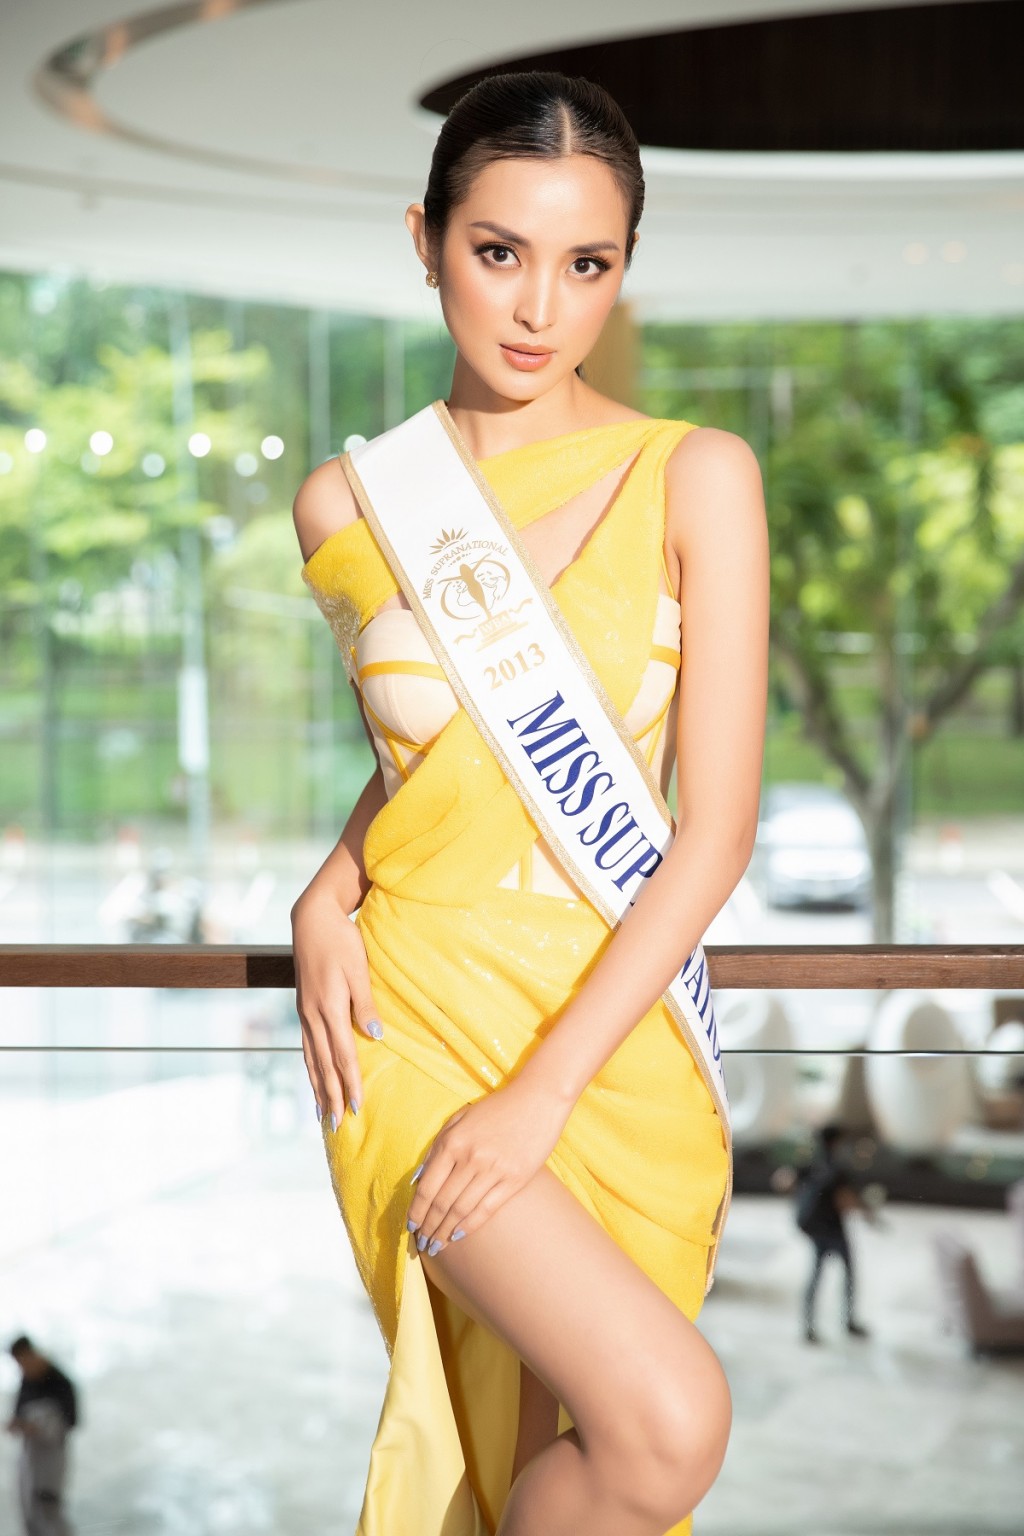 Hoa hậu Siêu quốc gia 2013 đến Việt Nam làm giám khảo Miss Sea Island Vietnam 2022